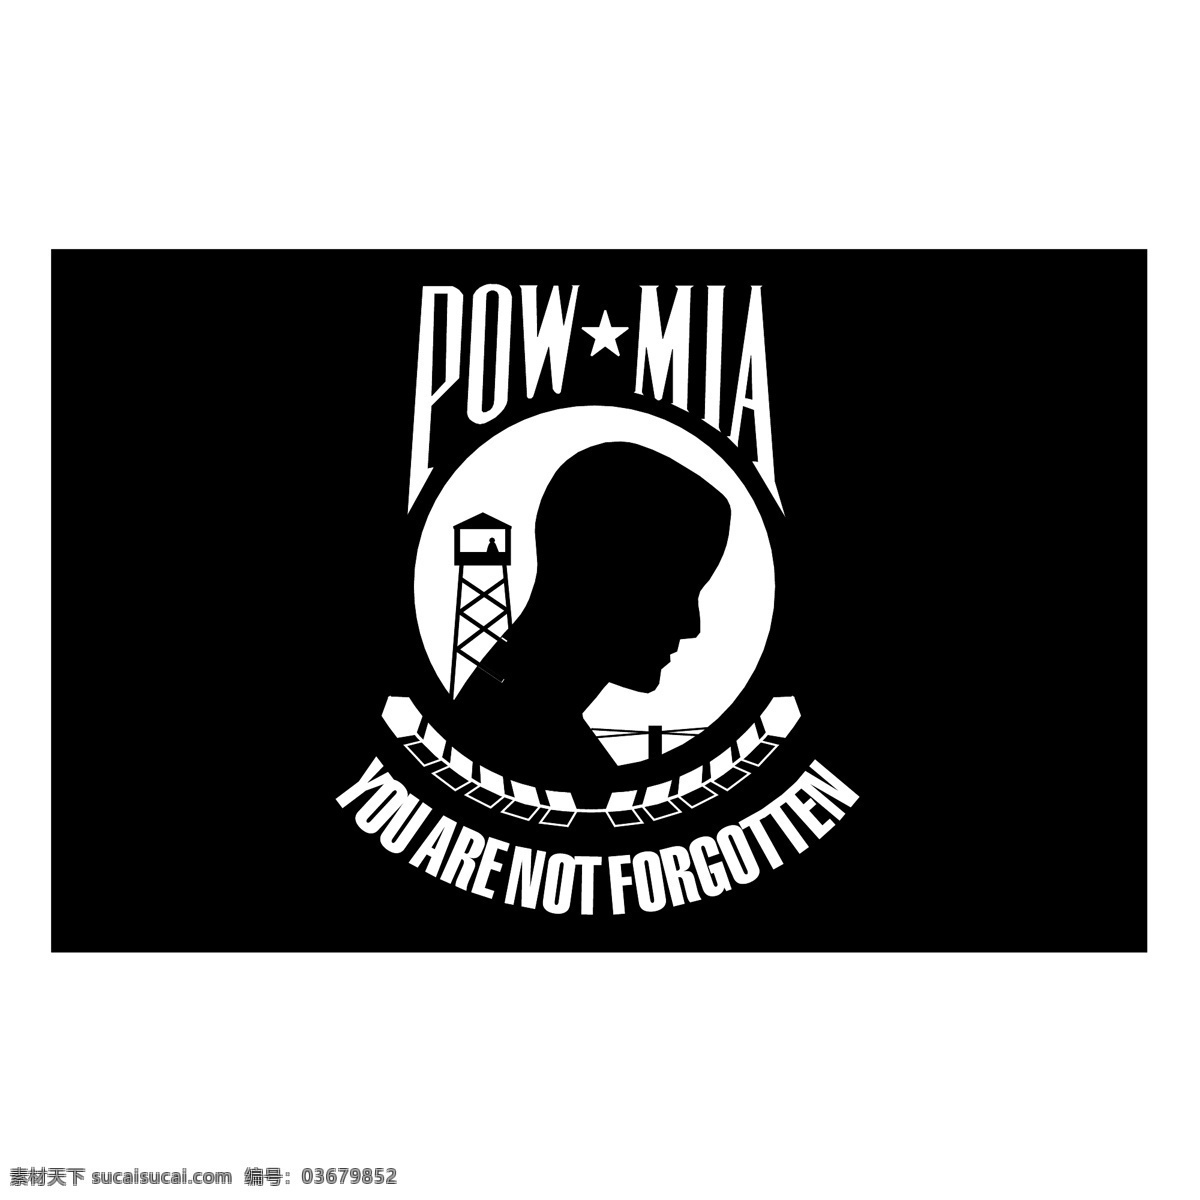 战俘米娅 powmia 标识 标识为免费 白色